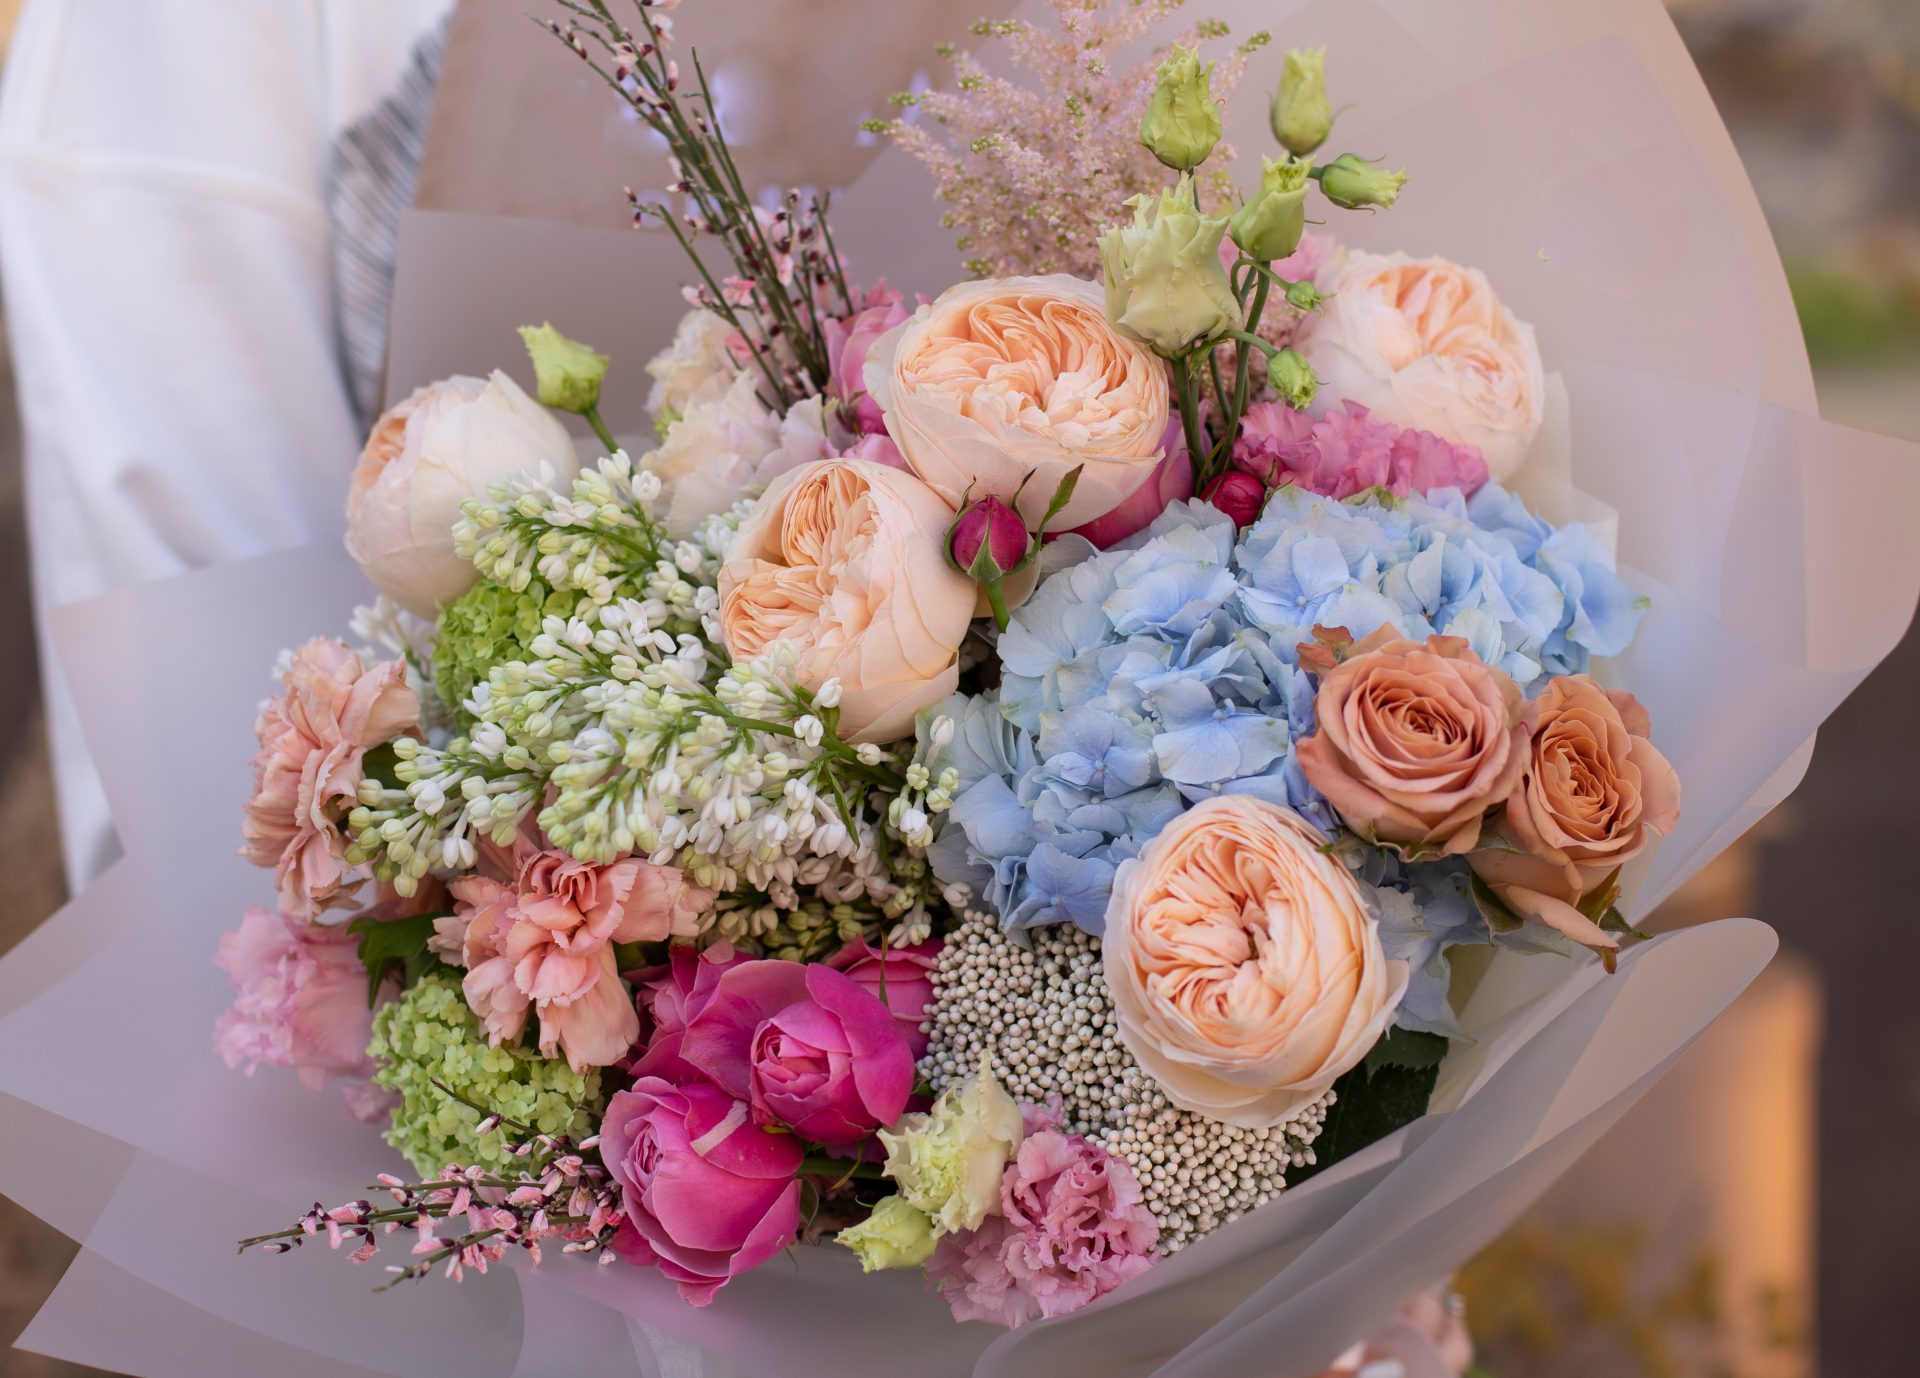 花束をお祝いに贈りたい 手配はいつまで 渡すタイミングは Hanaprimeマガジン